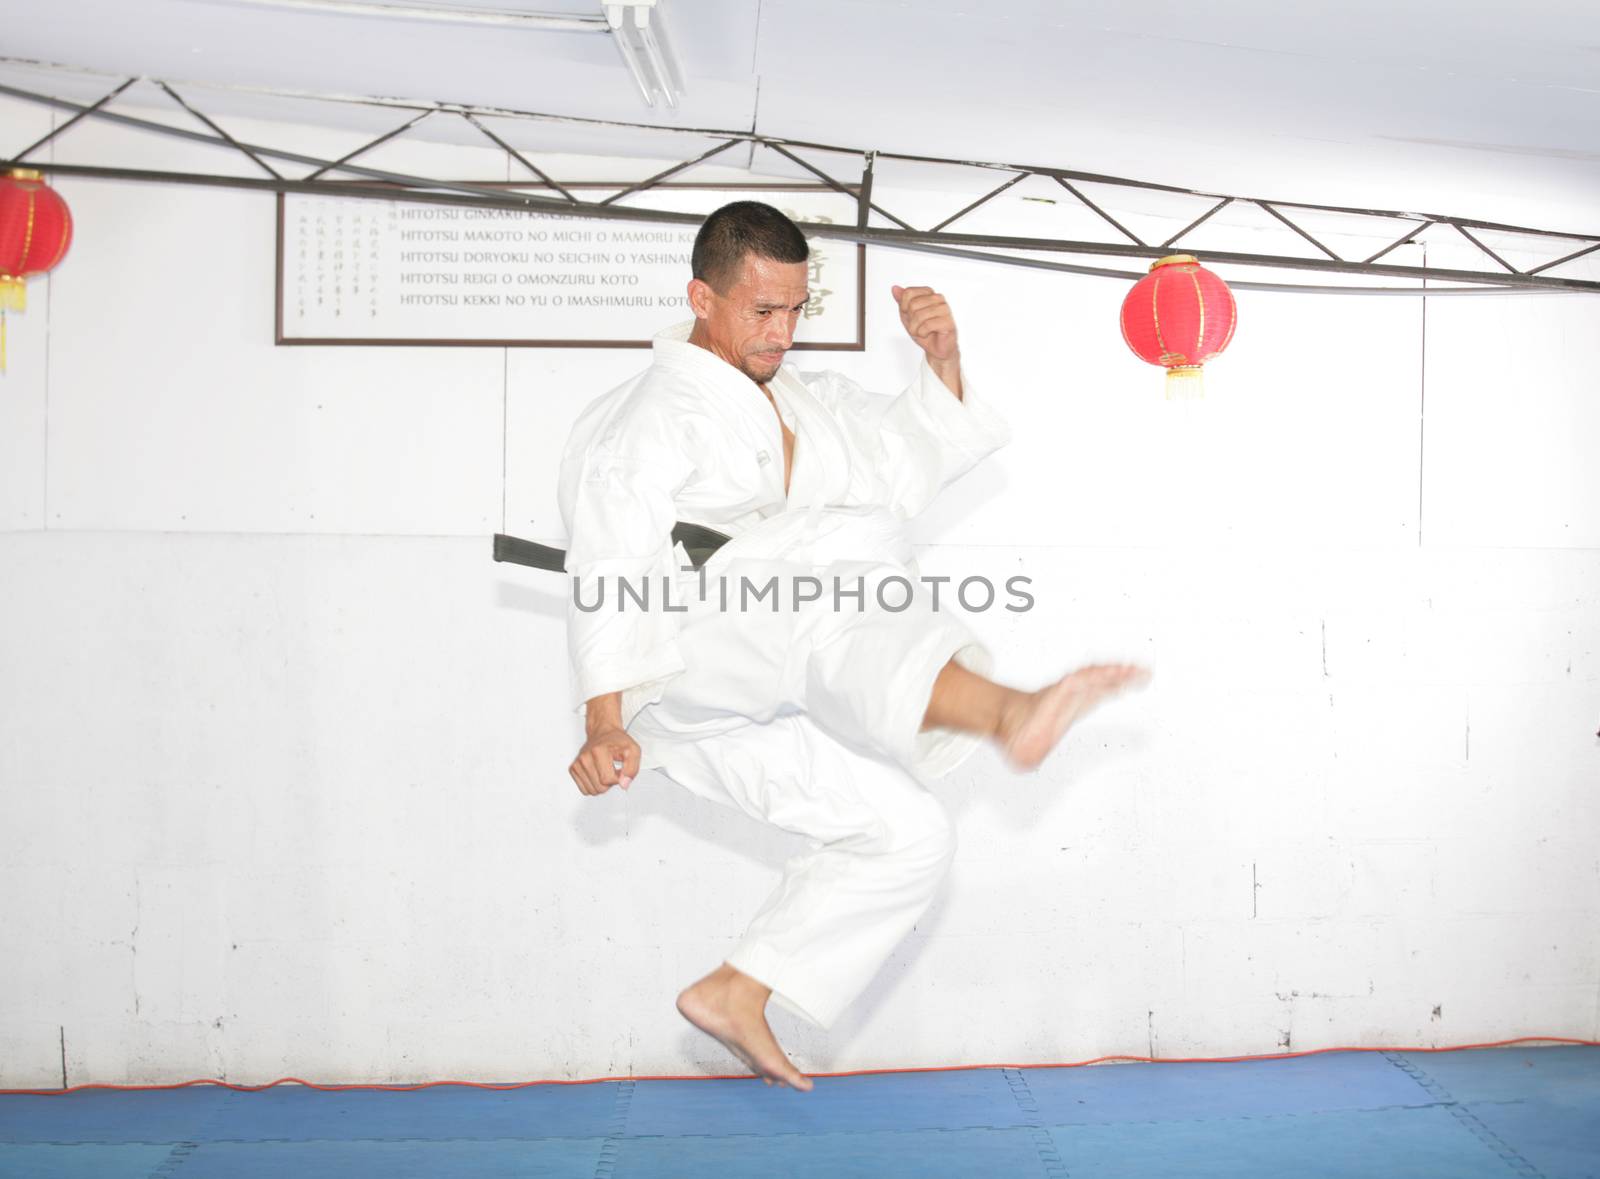 american man in karate suit, suspended in mid air